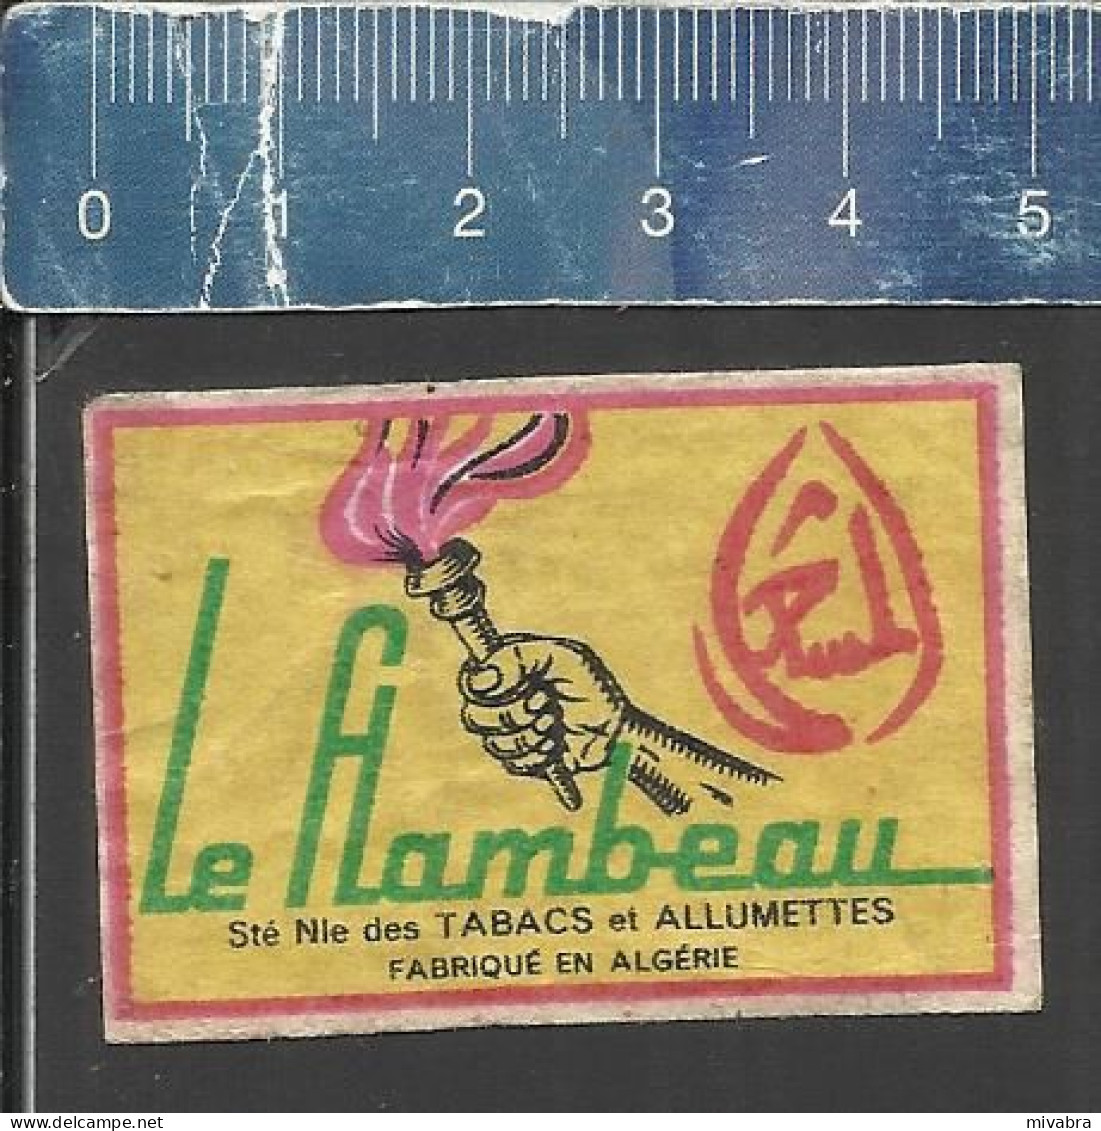 LE FLAMBEAU ( TORCH FAKKEL ) - OLD MATCHBOX LABEL ALGERIA - Boites D'allumettes - Etiquettes